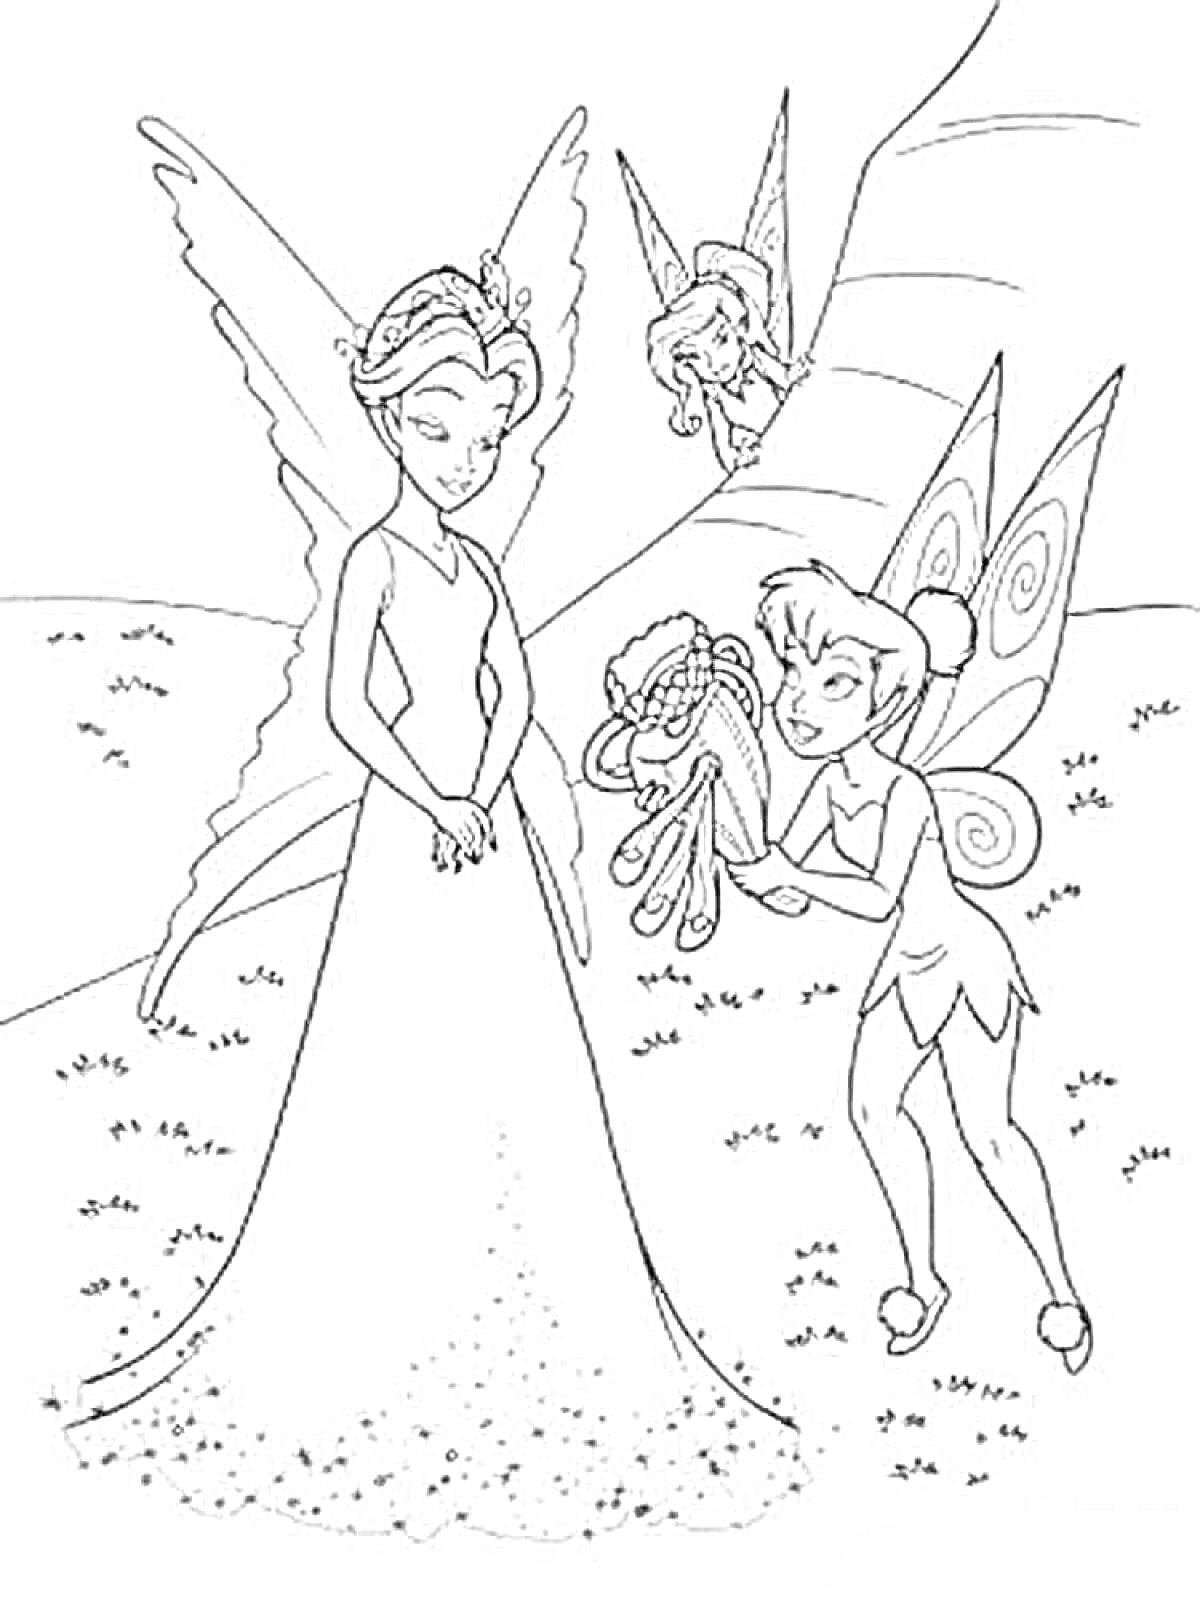 Раскраска Три феи: фея с длинным платьем с блестками, фея с крыльями, держащая ленты, фея, выглядывающая из-за дерева